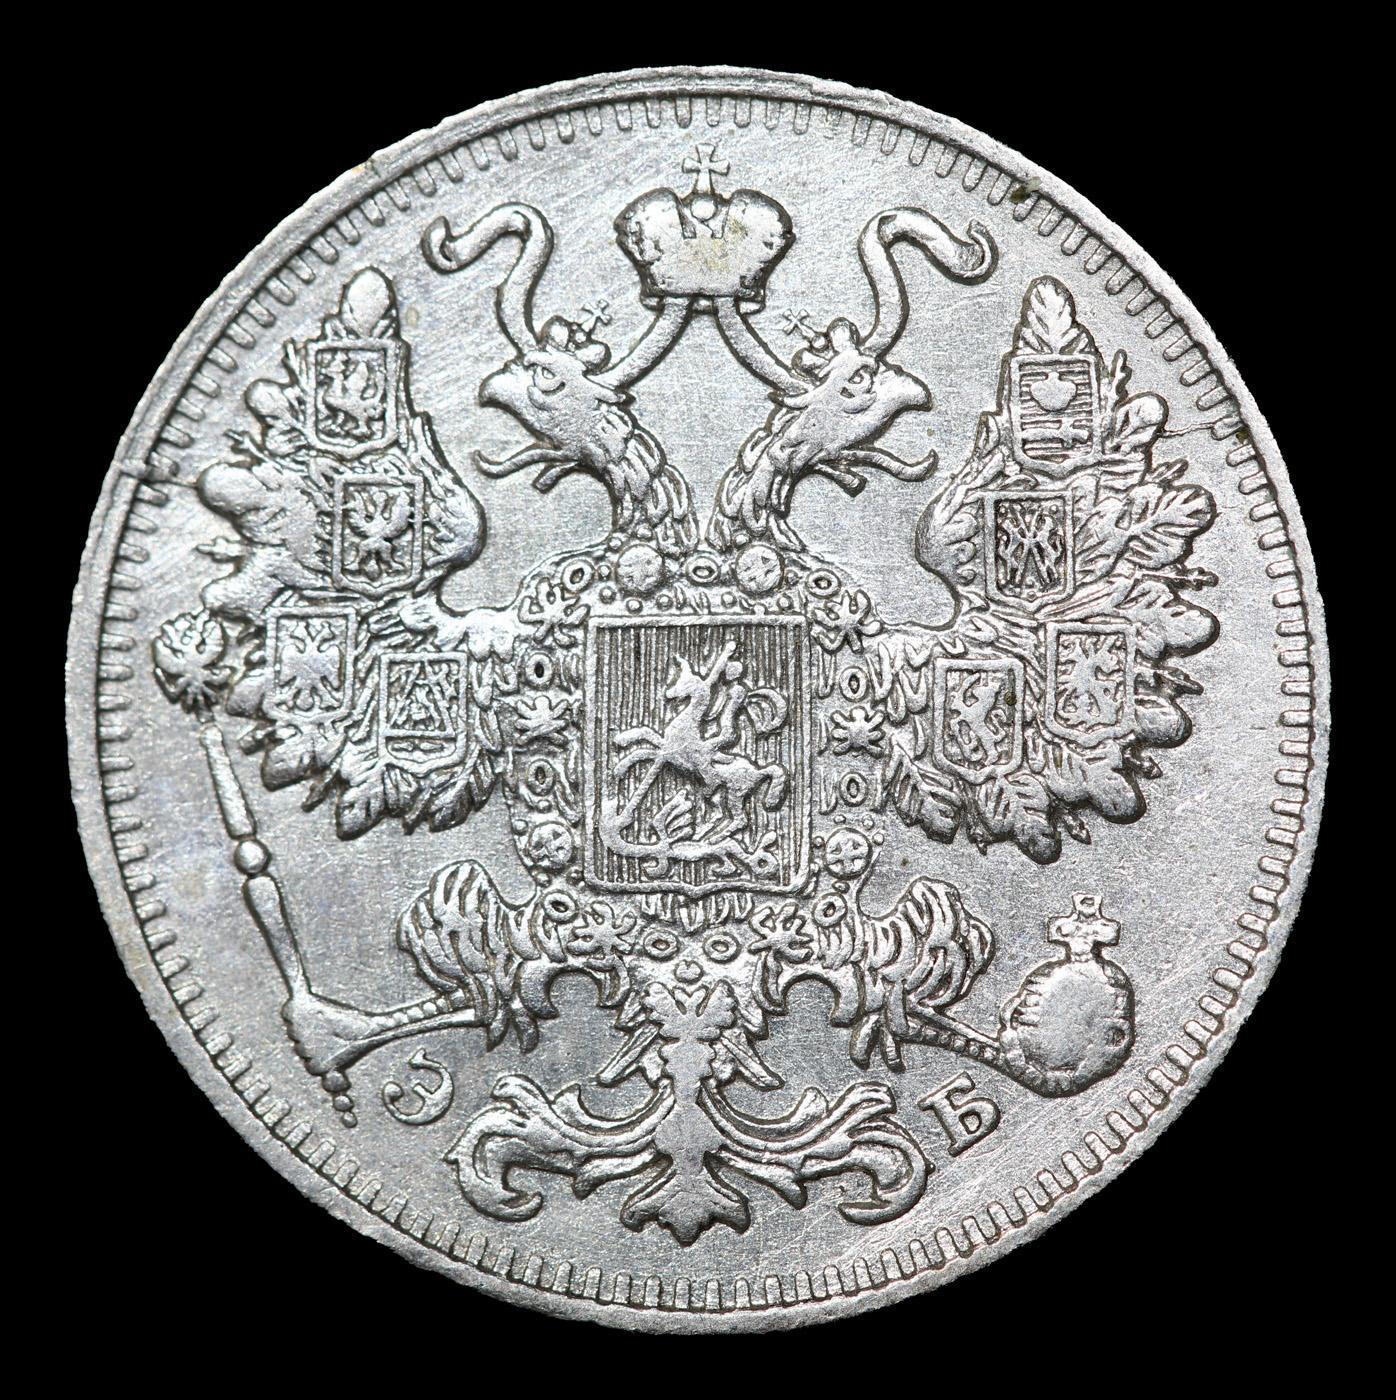 1911 Russia 15 Kopeks Silver Y# 21a.2 Grades Select Unc